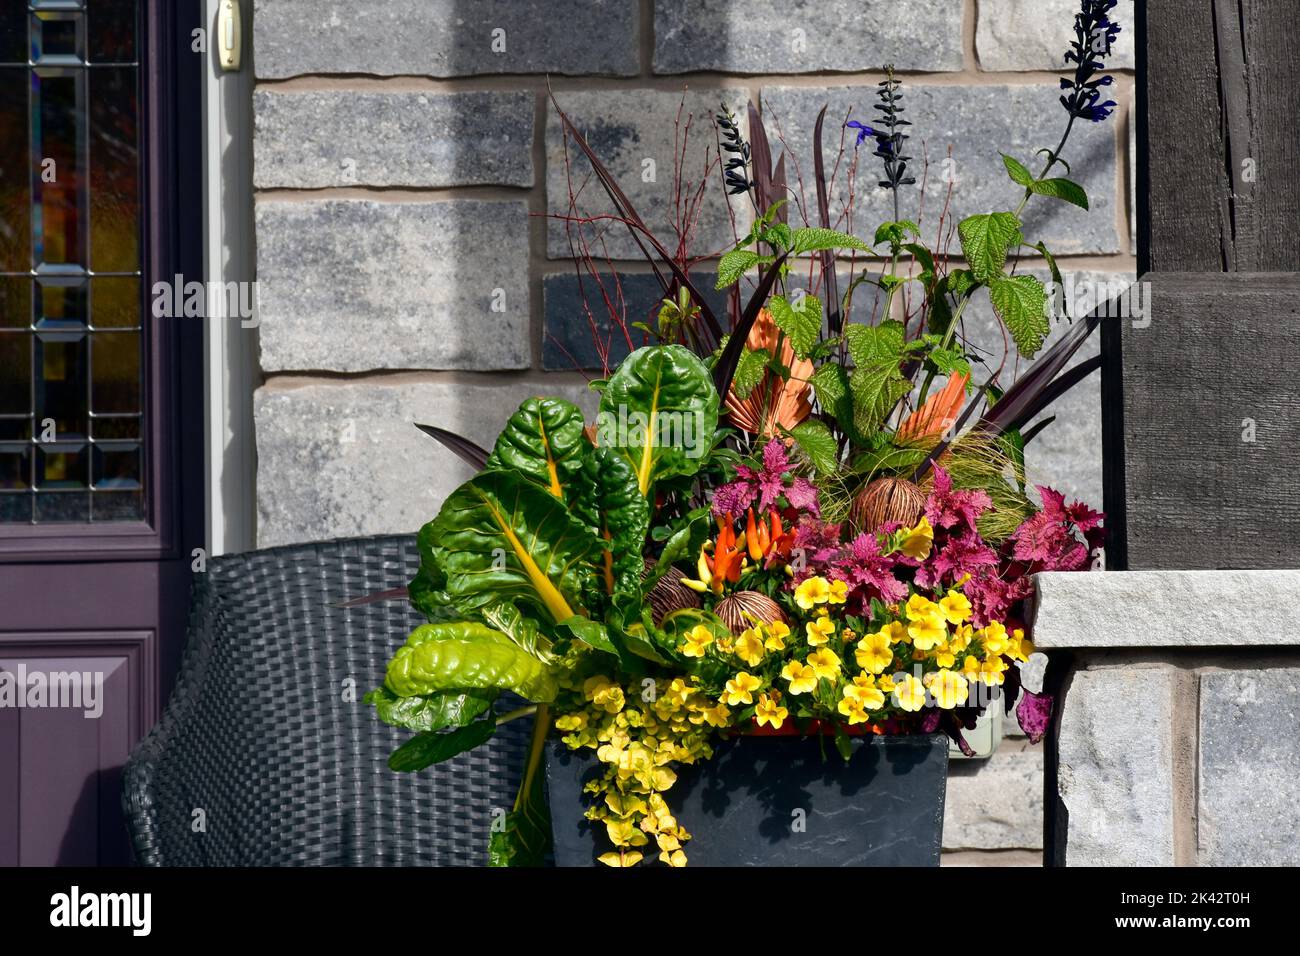 Container Gartenarbeit mit hellen Farben und dekorativen Grünkohl schaffen eine schöne Danksageblume Anordnung. Stockfoto